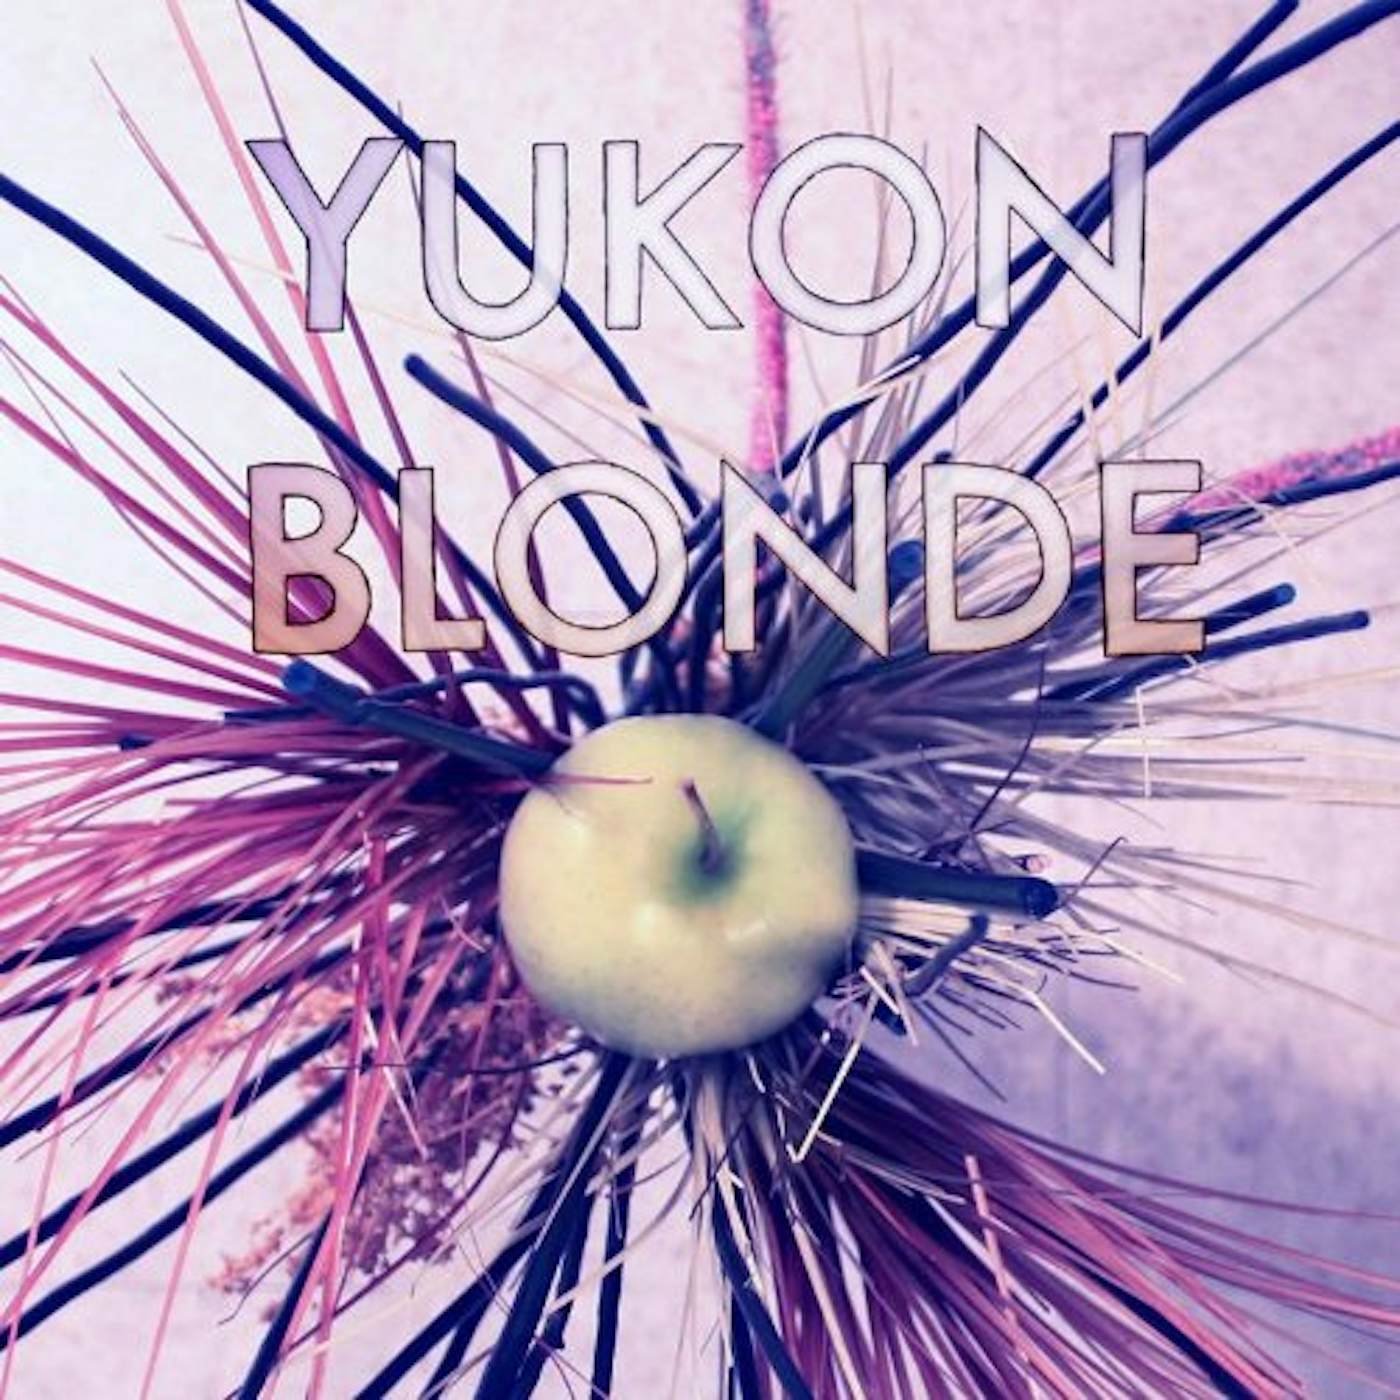 YUKON BLONDE (Vinyl)